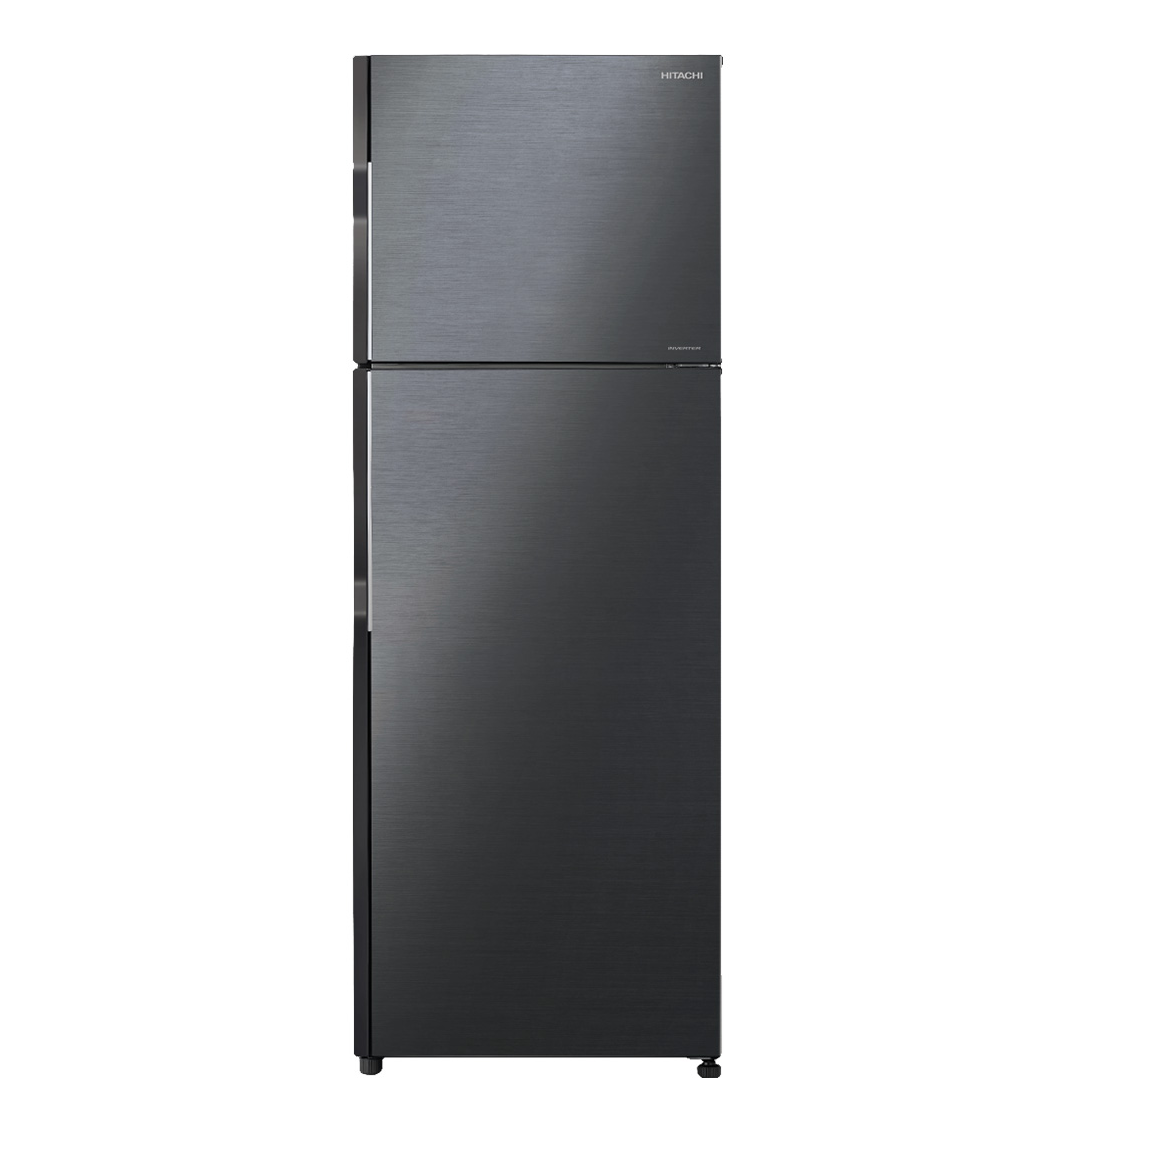 [GIAO HÀNG XUYÊN TẾT]TRẢ GÓP 0% - Tủ lạnh Hitachi Inverter 290 lít R-H350PGV7(BBK)